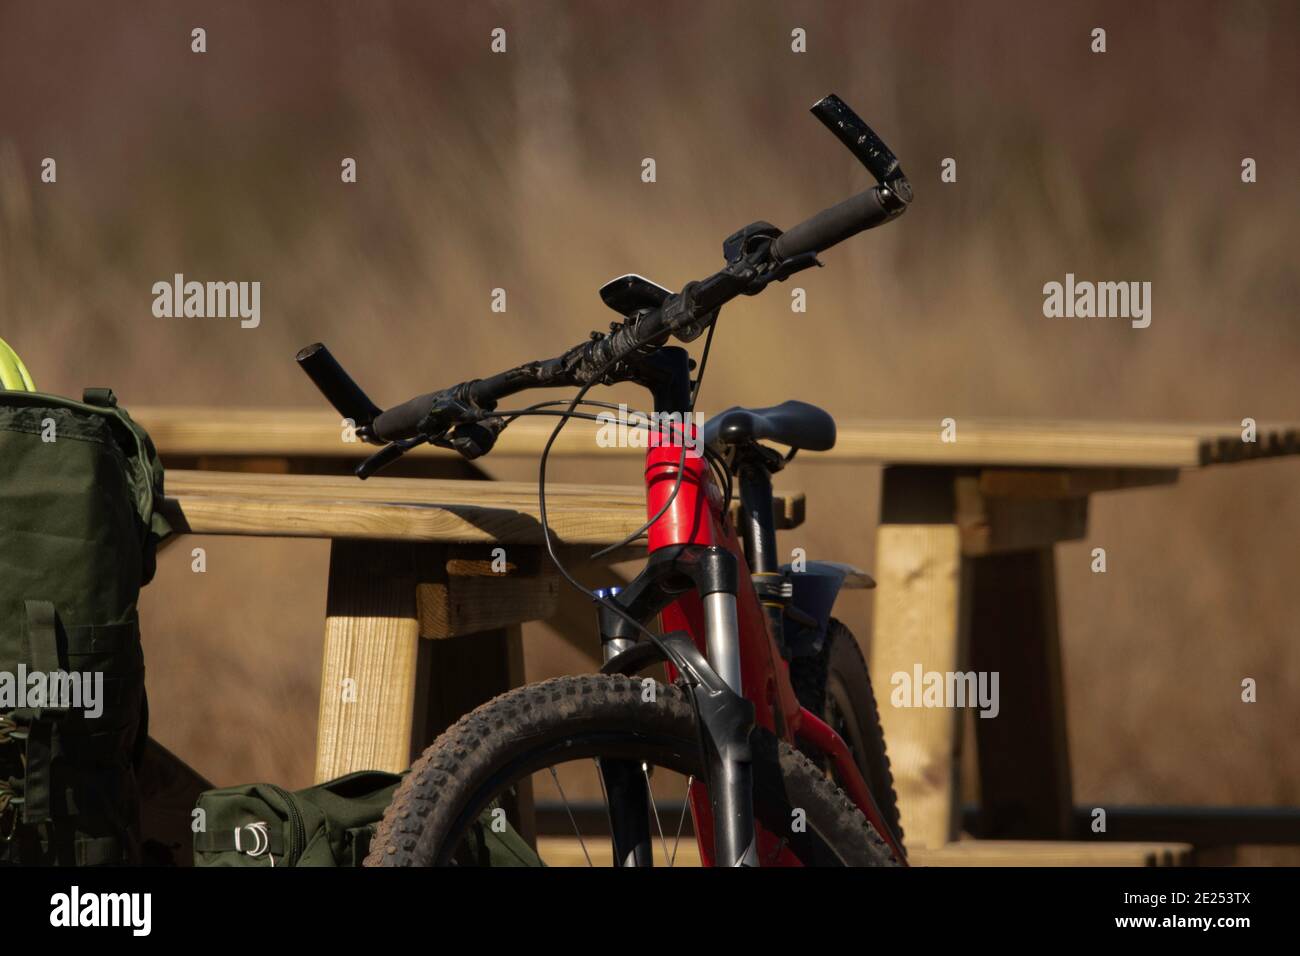 Pique-nique en vélo Stockfoto